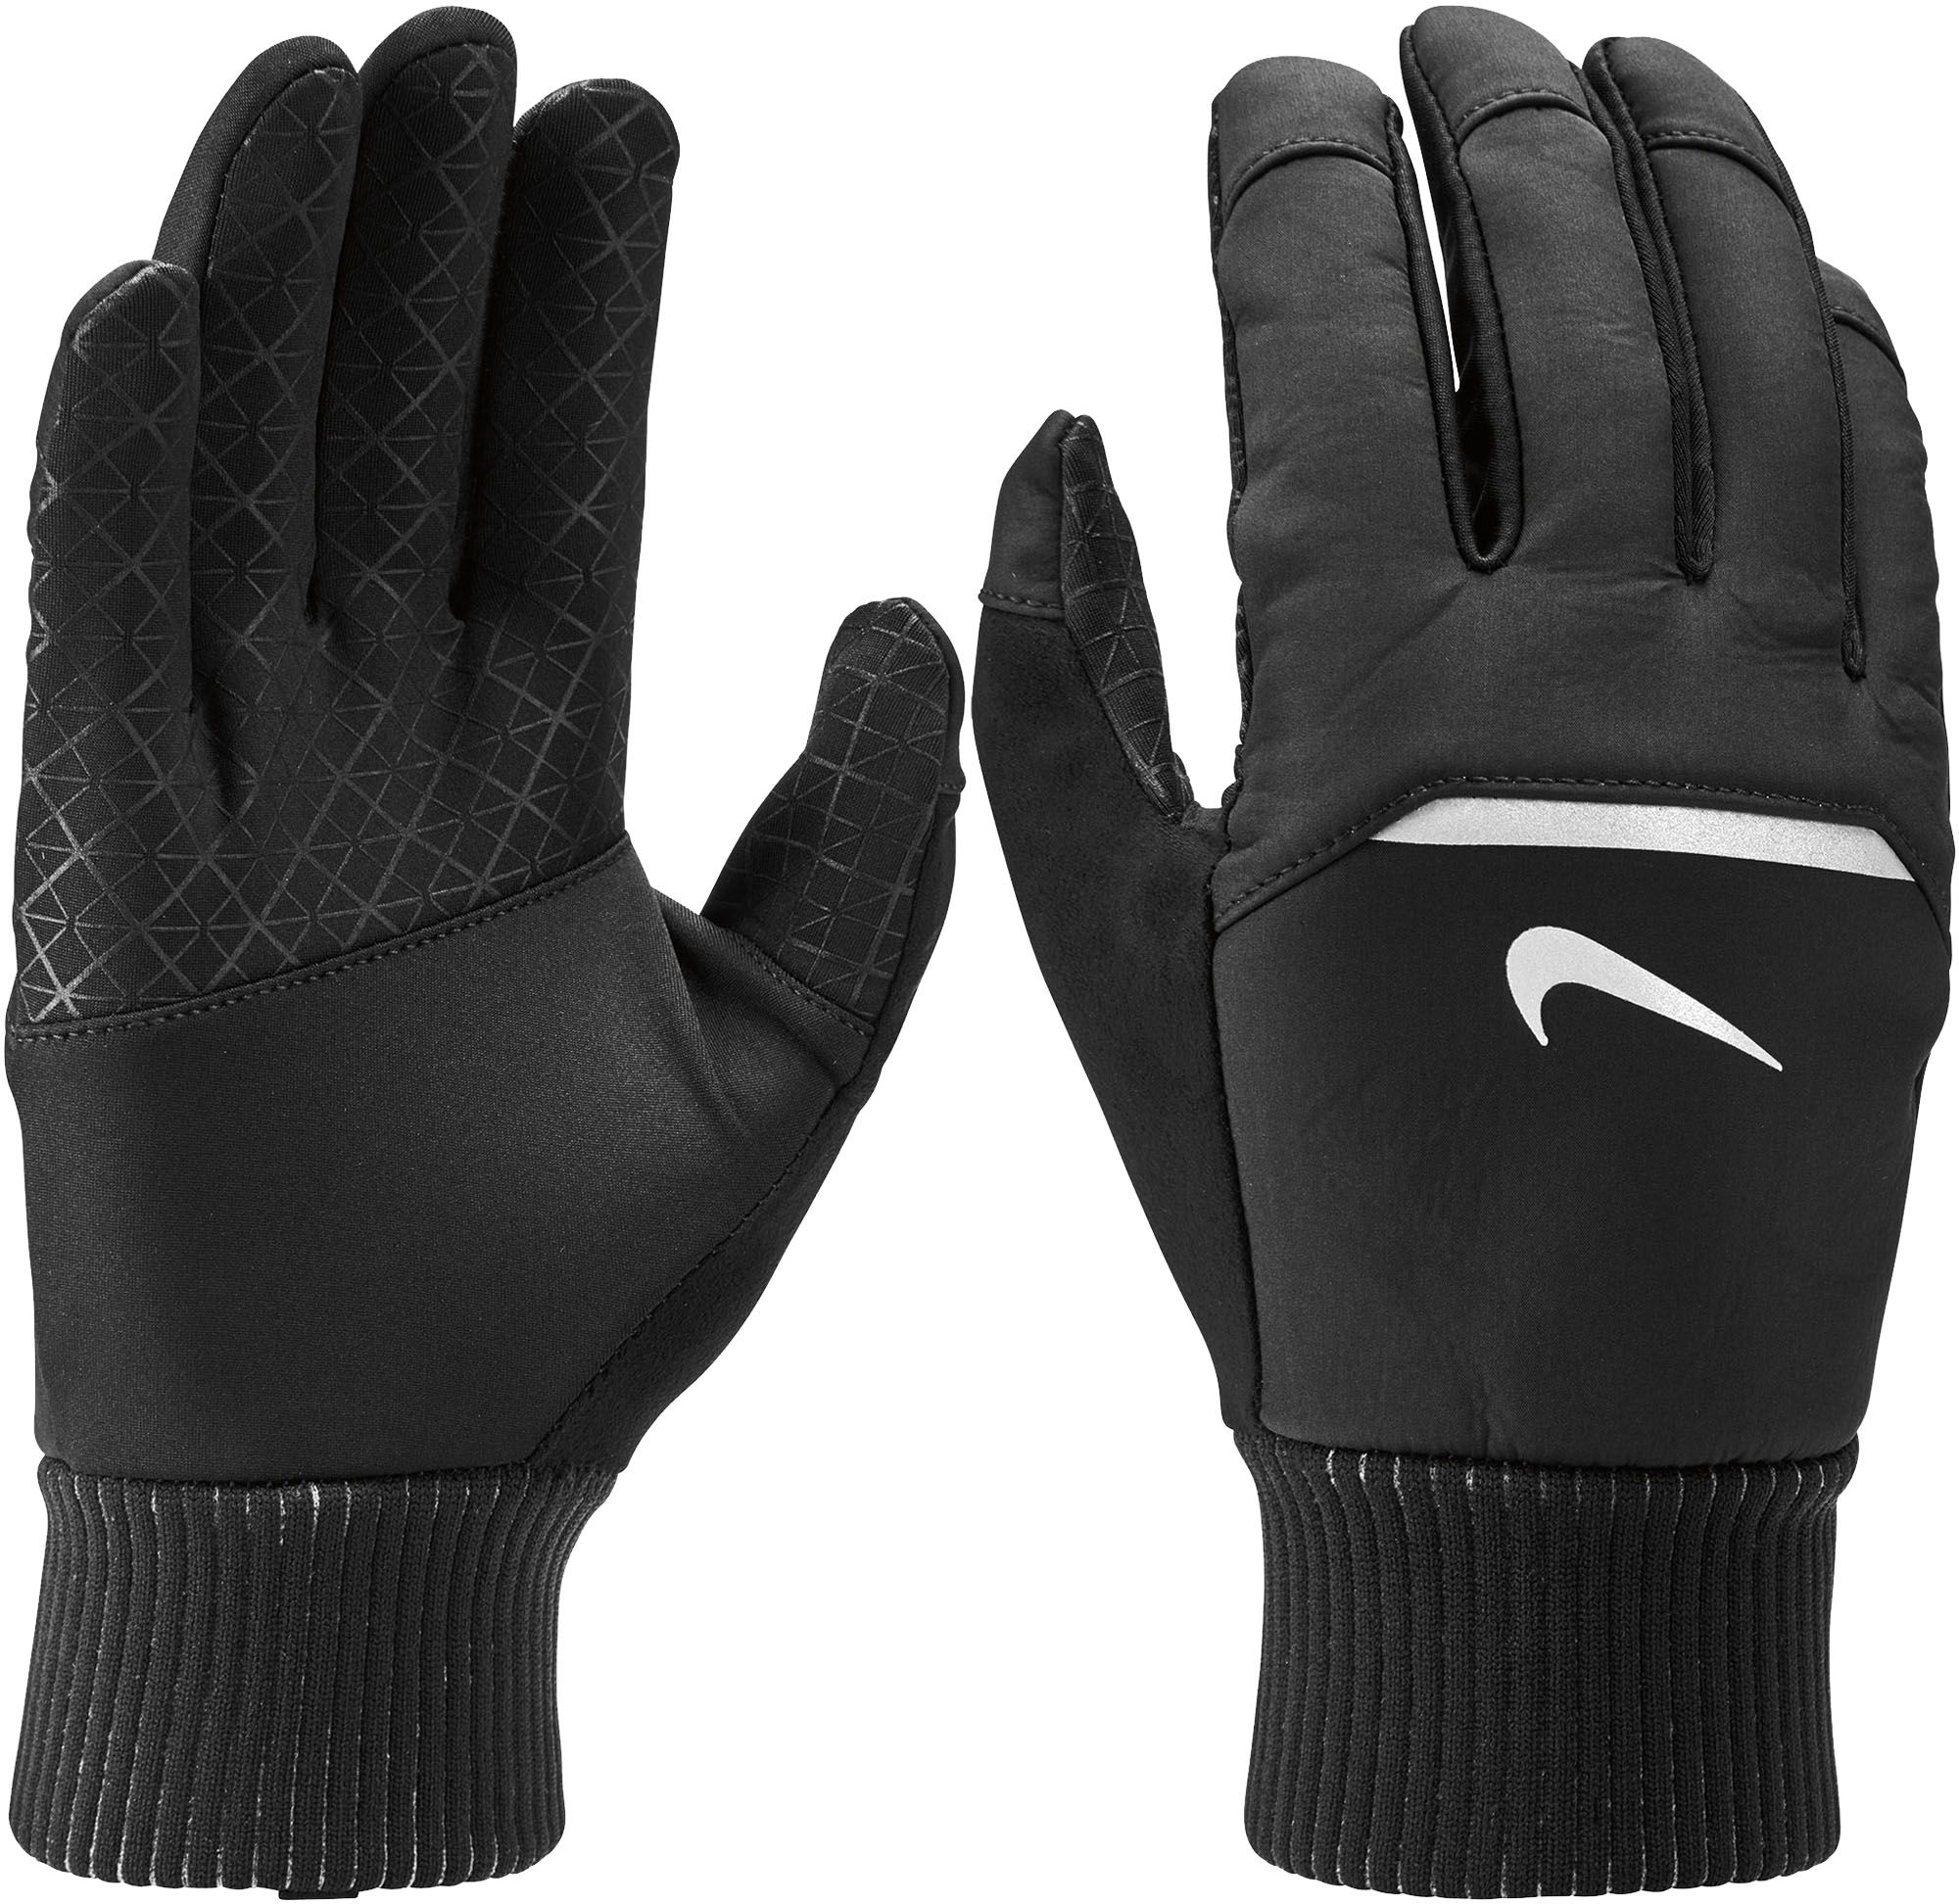 nike men's winter gloves